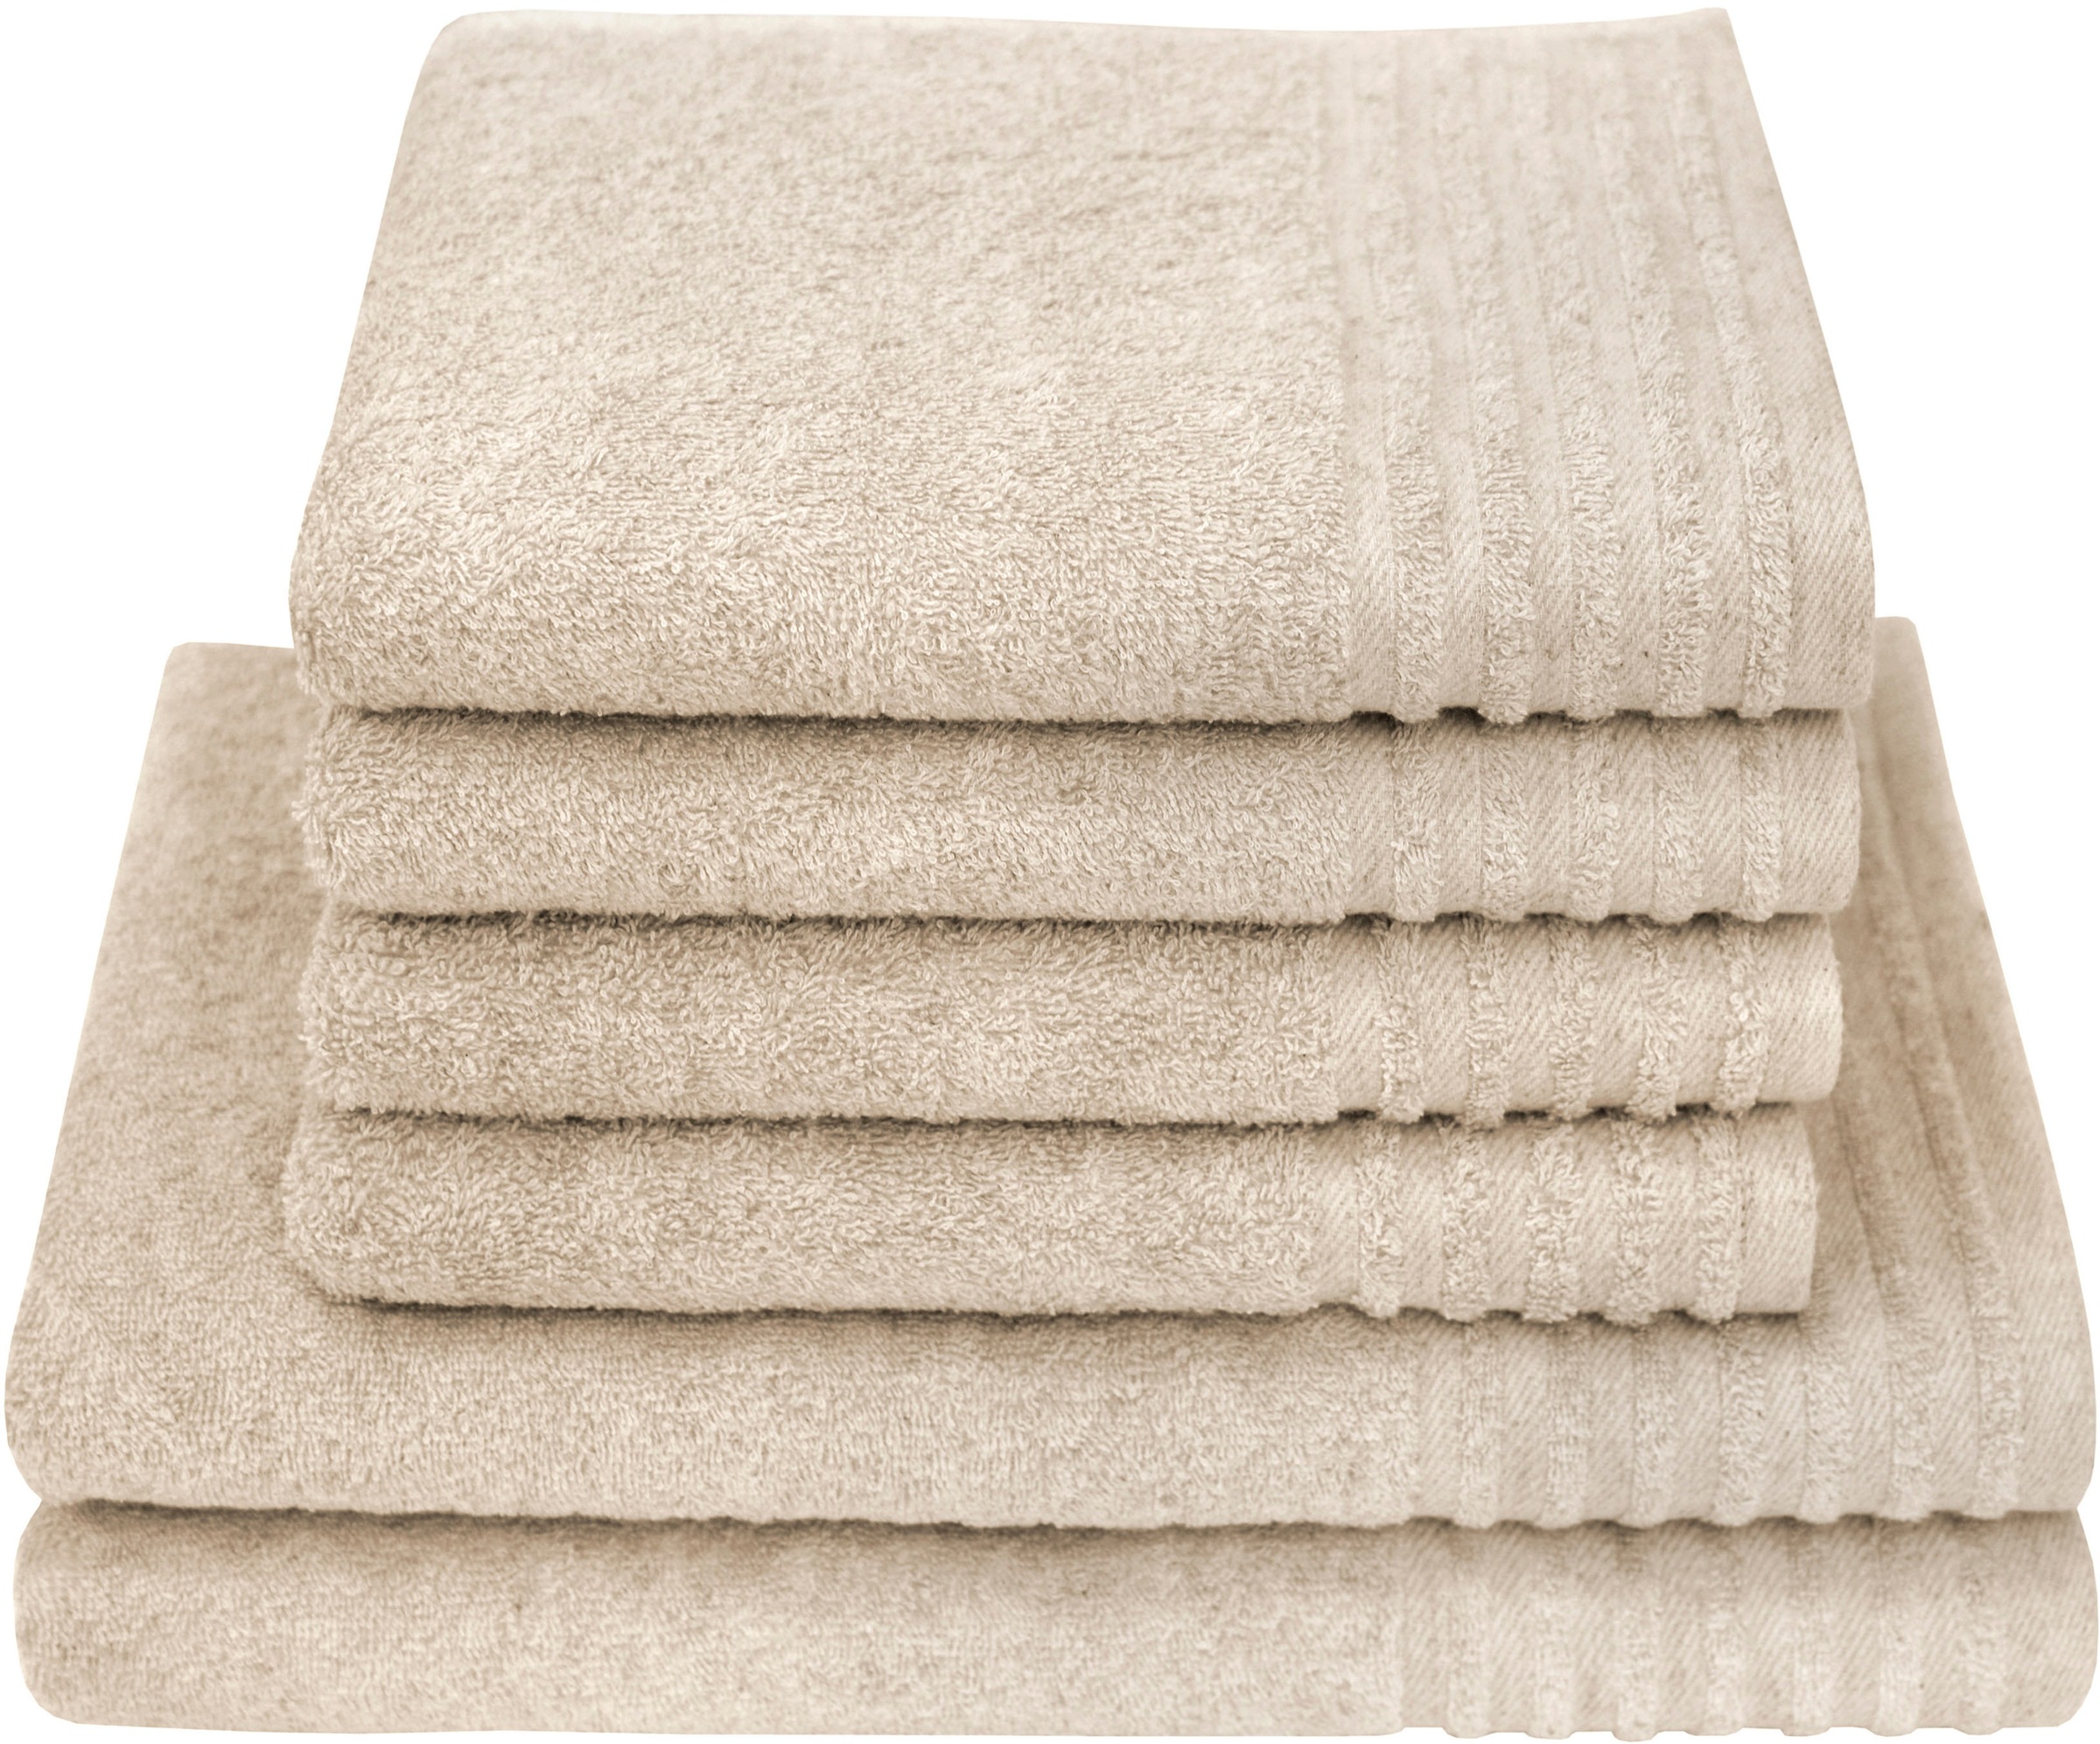 Handtuchsets aus Moebel Baumwolle 24 Preisvergleich 